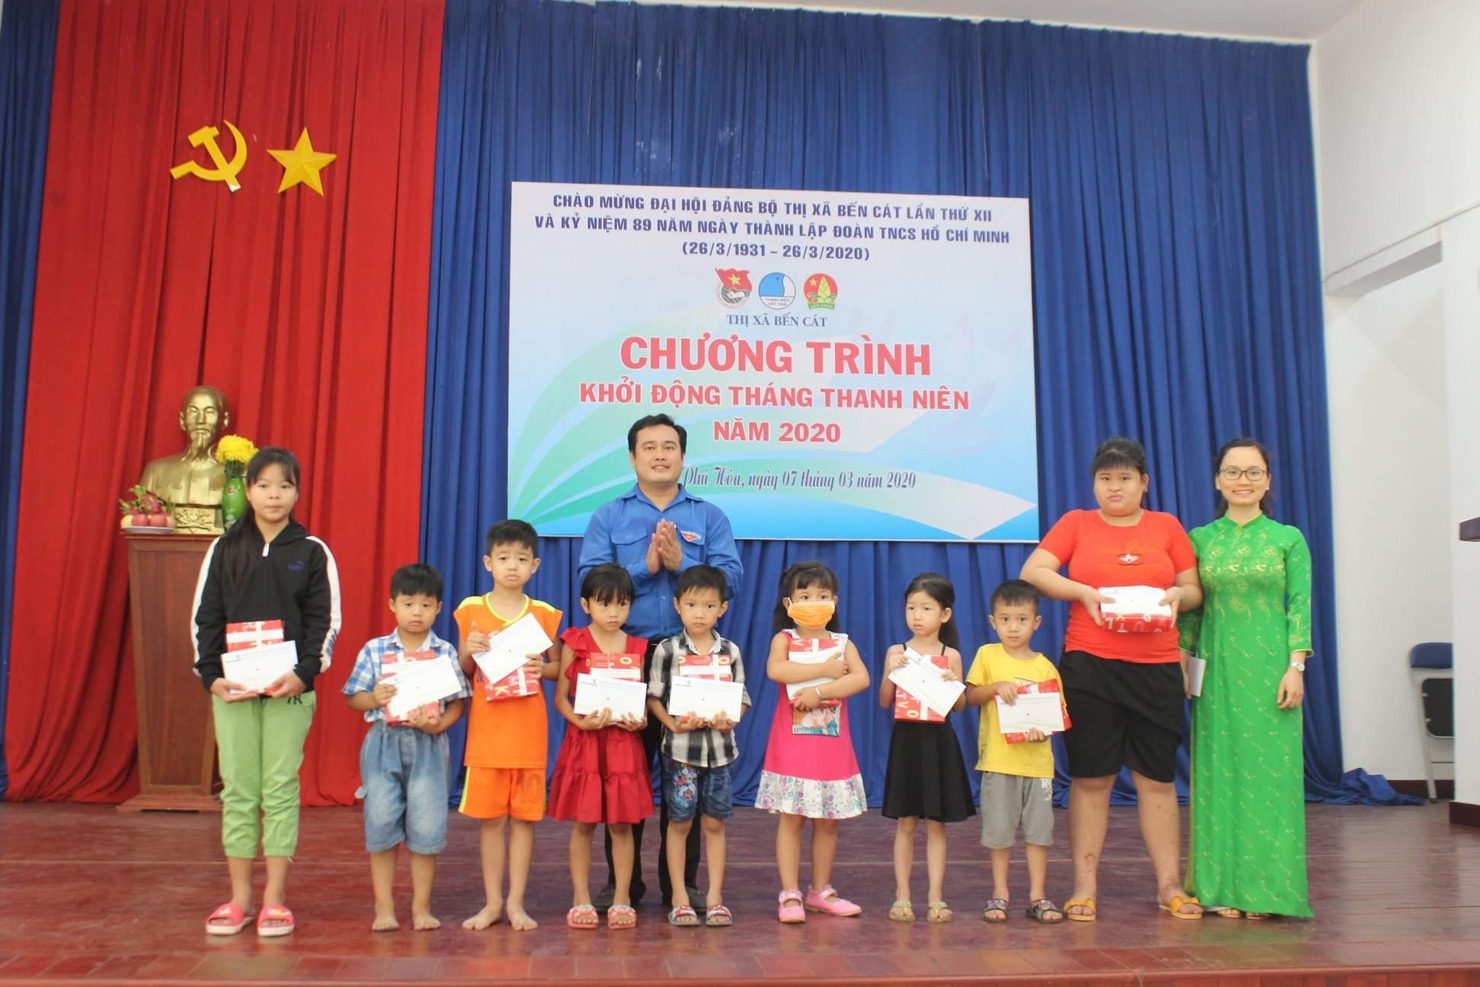 Bà Đặng Thị Thành - Bí thư Đoàn cơ sở  Vietcombank Bắc Bình Dương (ngoài cùng bên phải) và ông Nguyễn Hoàng Vinh - Bí thư Thị đoàn Bến Cát (hàng 2) trao tặng học bổng cho các em học sinh nghèo trên địa bàn.